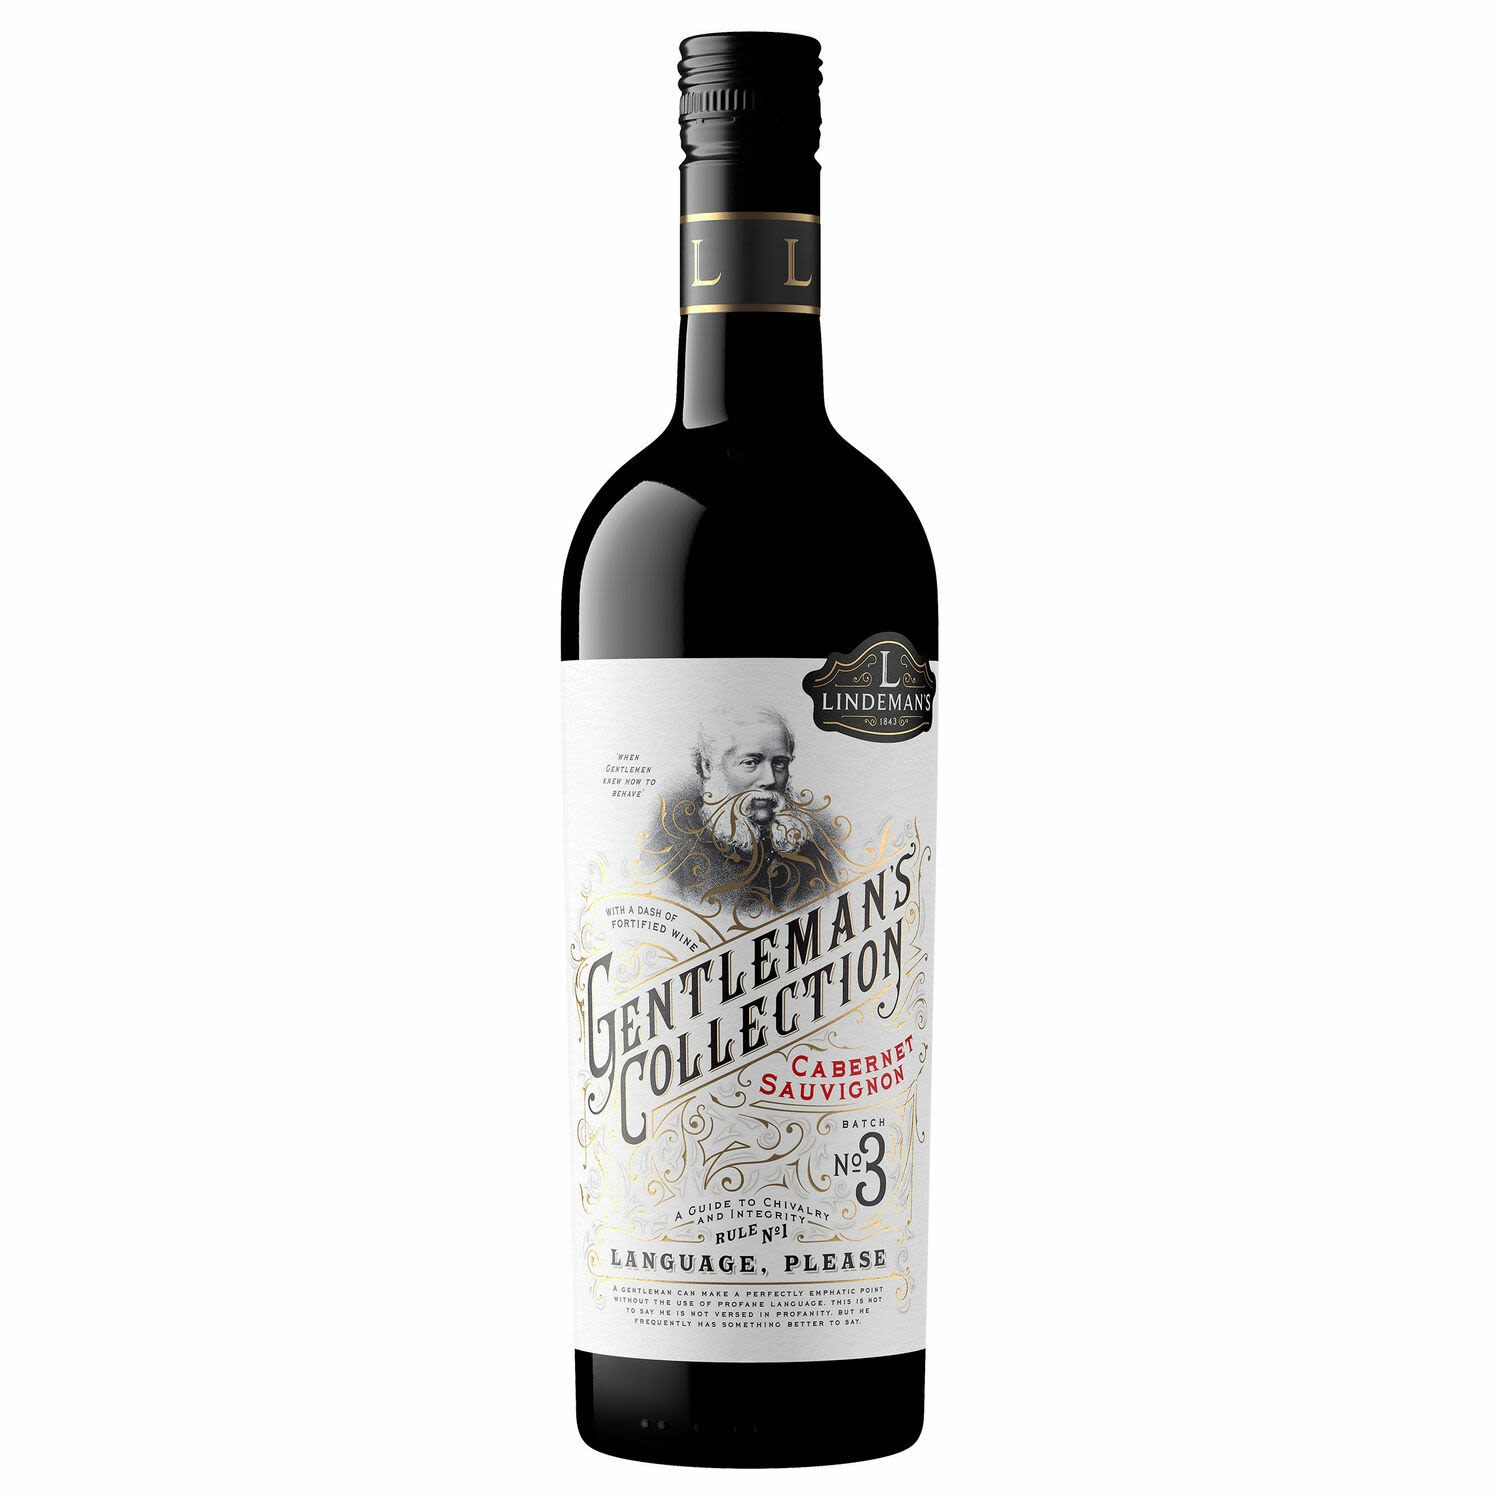 Lindeman's Gentleman's Collection Cabernet Sauvignon<br /> <br />Alcohol Volume: 14.50%<br /><br />Pack Format: Bottle<br /><br />Standard Drinks: 8.6</br /><br />Pack Type: Bottle<br /><br />Country of Origin: Australia<br /><br />Region: n/a<br /><br />Vintage: '2018<br />